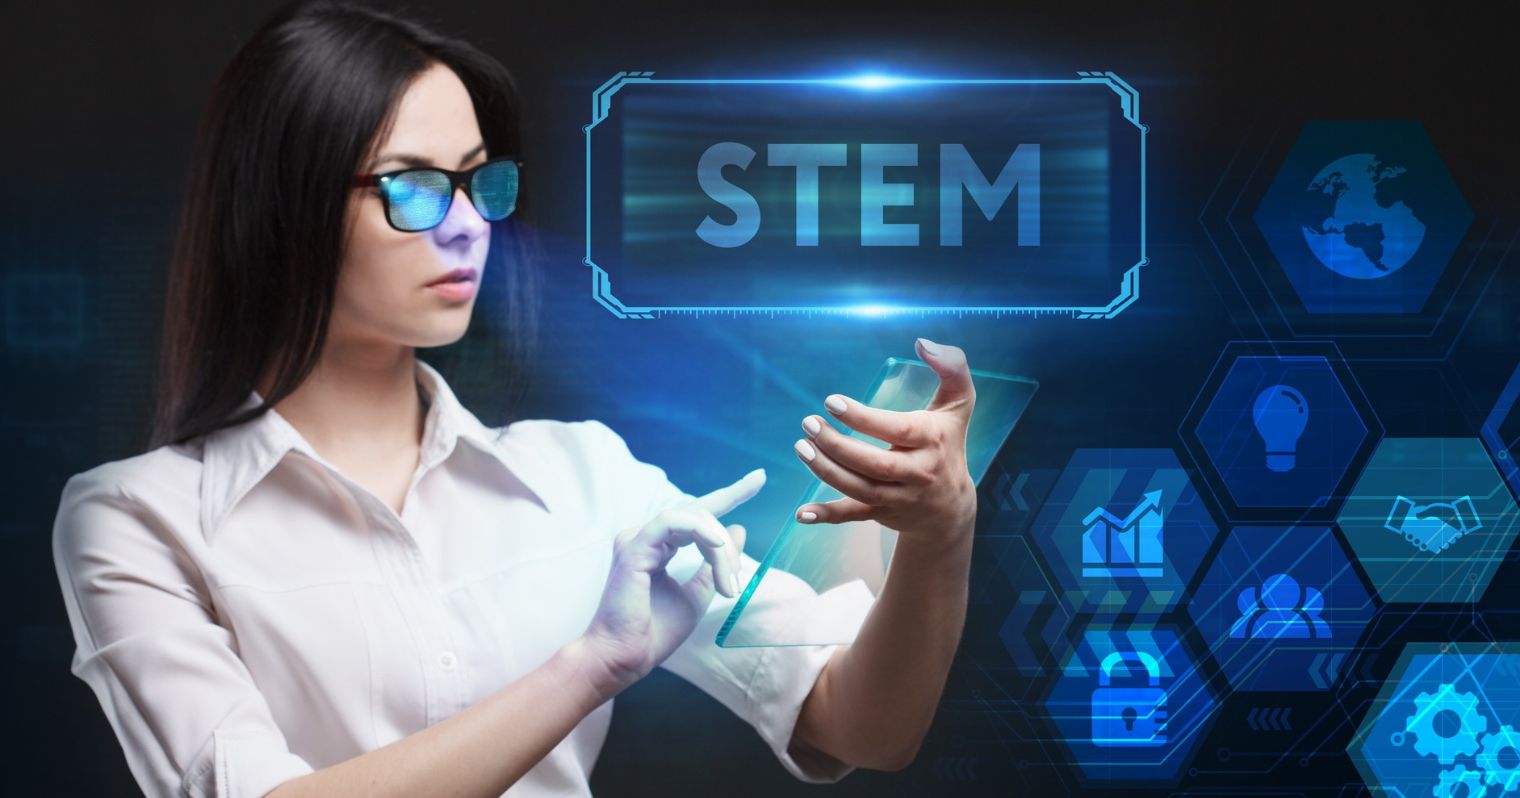 Egy női tudós látható a képen, mellette a STEM felirat, körülötte digitális ikonok